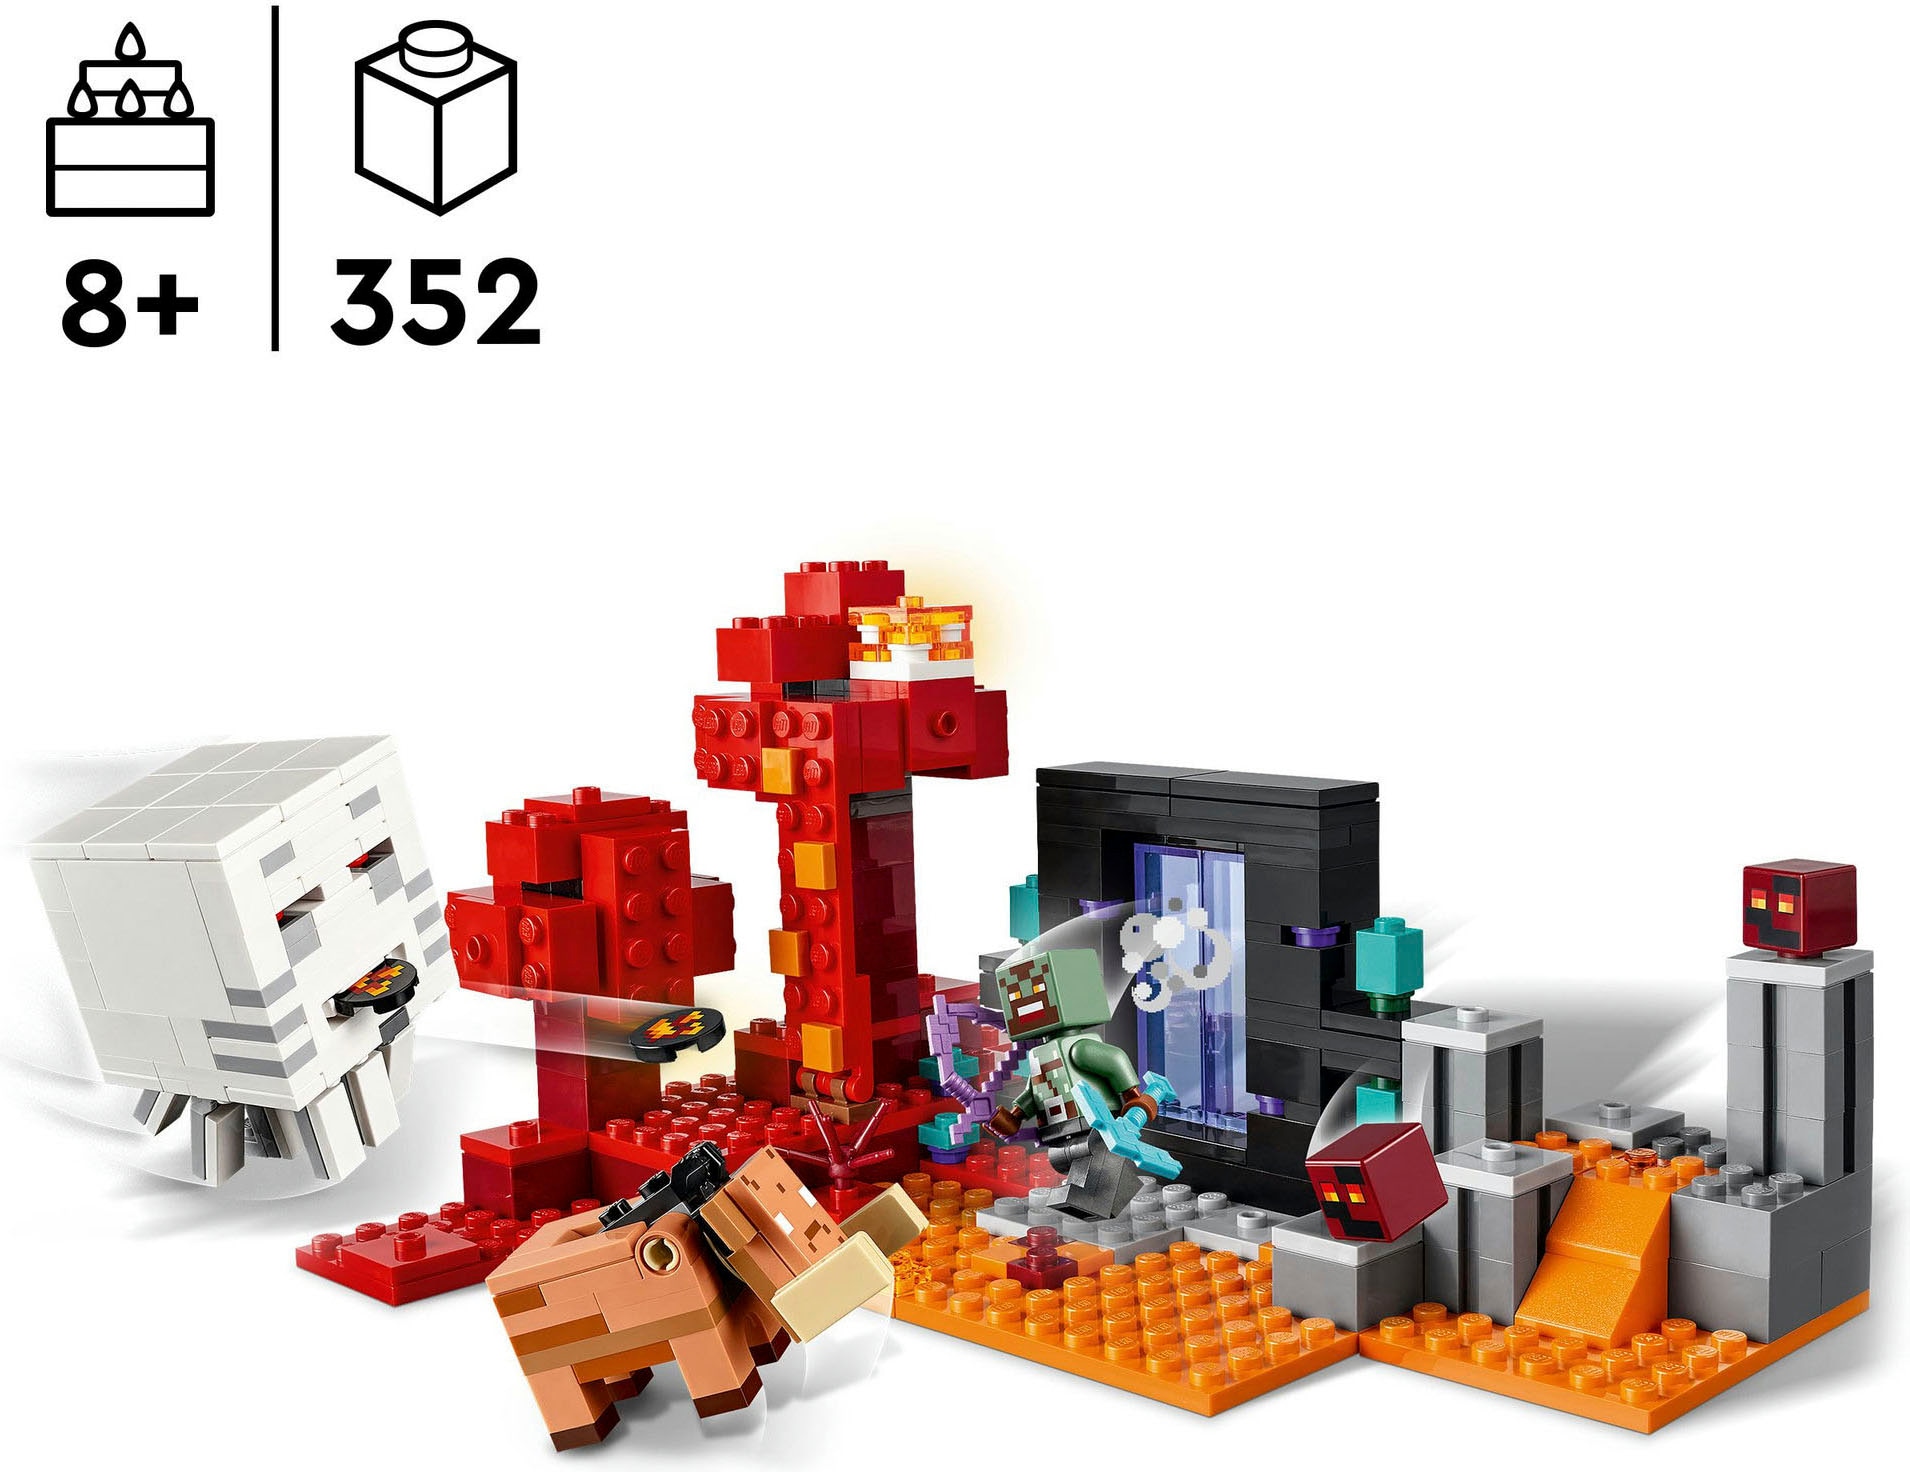 LEGO® Konstruktionsspielsteine »Hinterhalt am Netherportal (21255), LEGO Minecraft«, (352 St.), Made in Europe